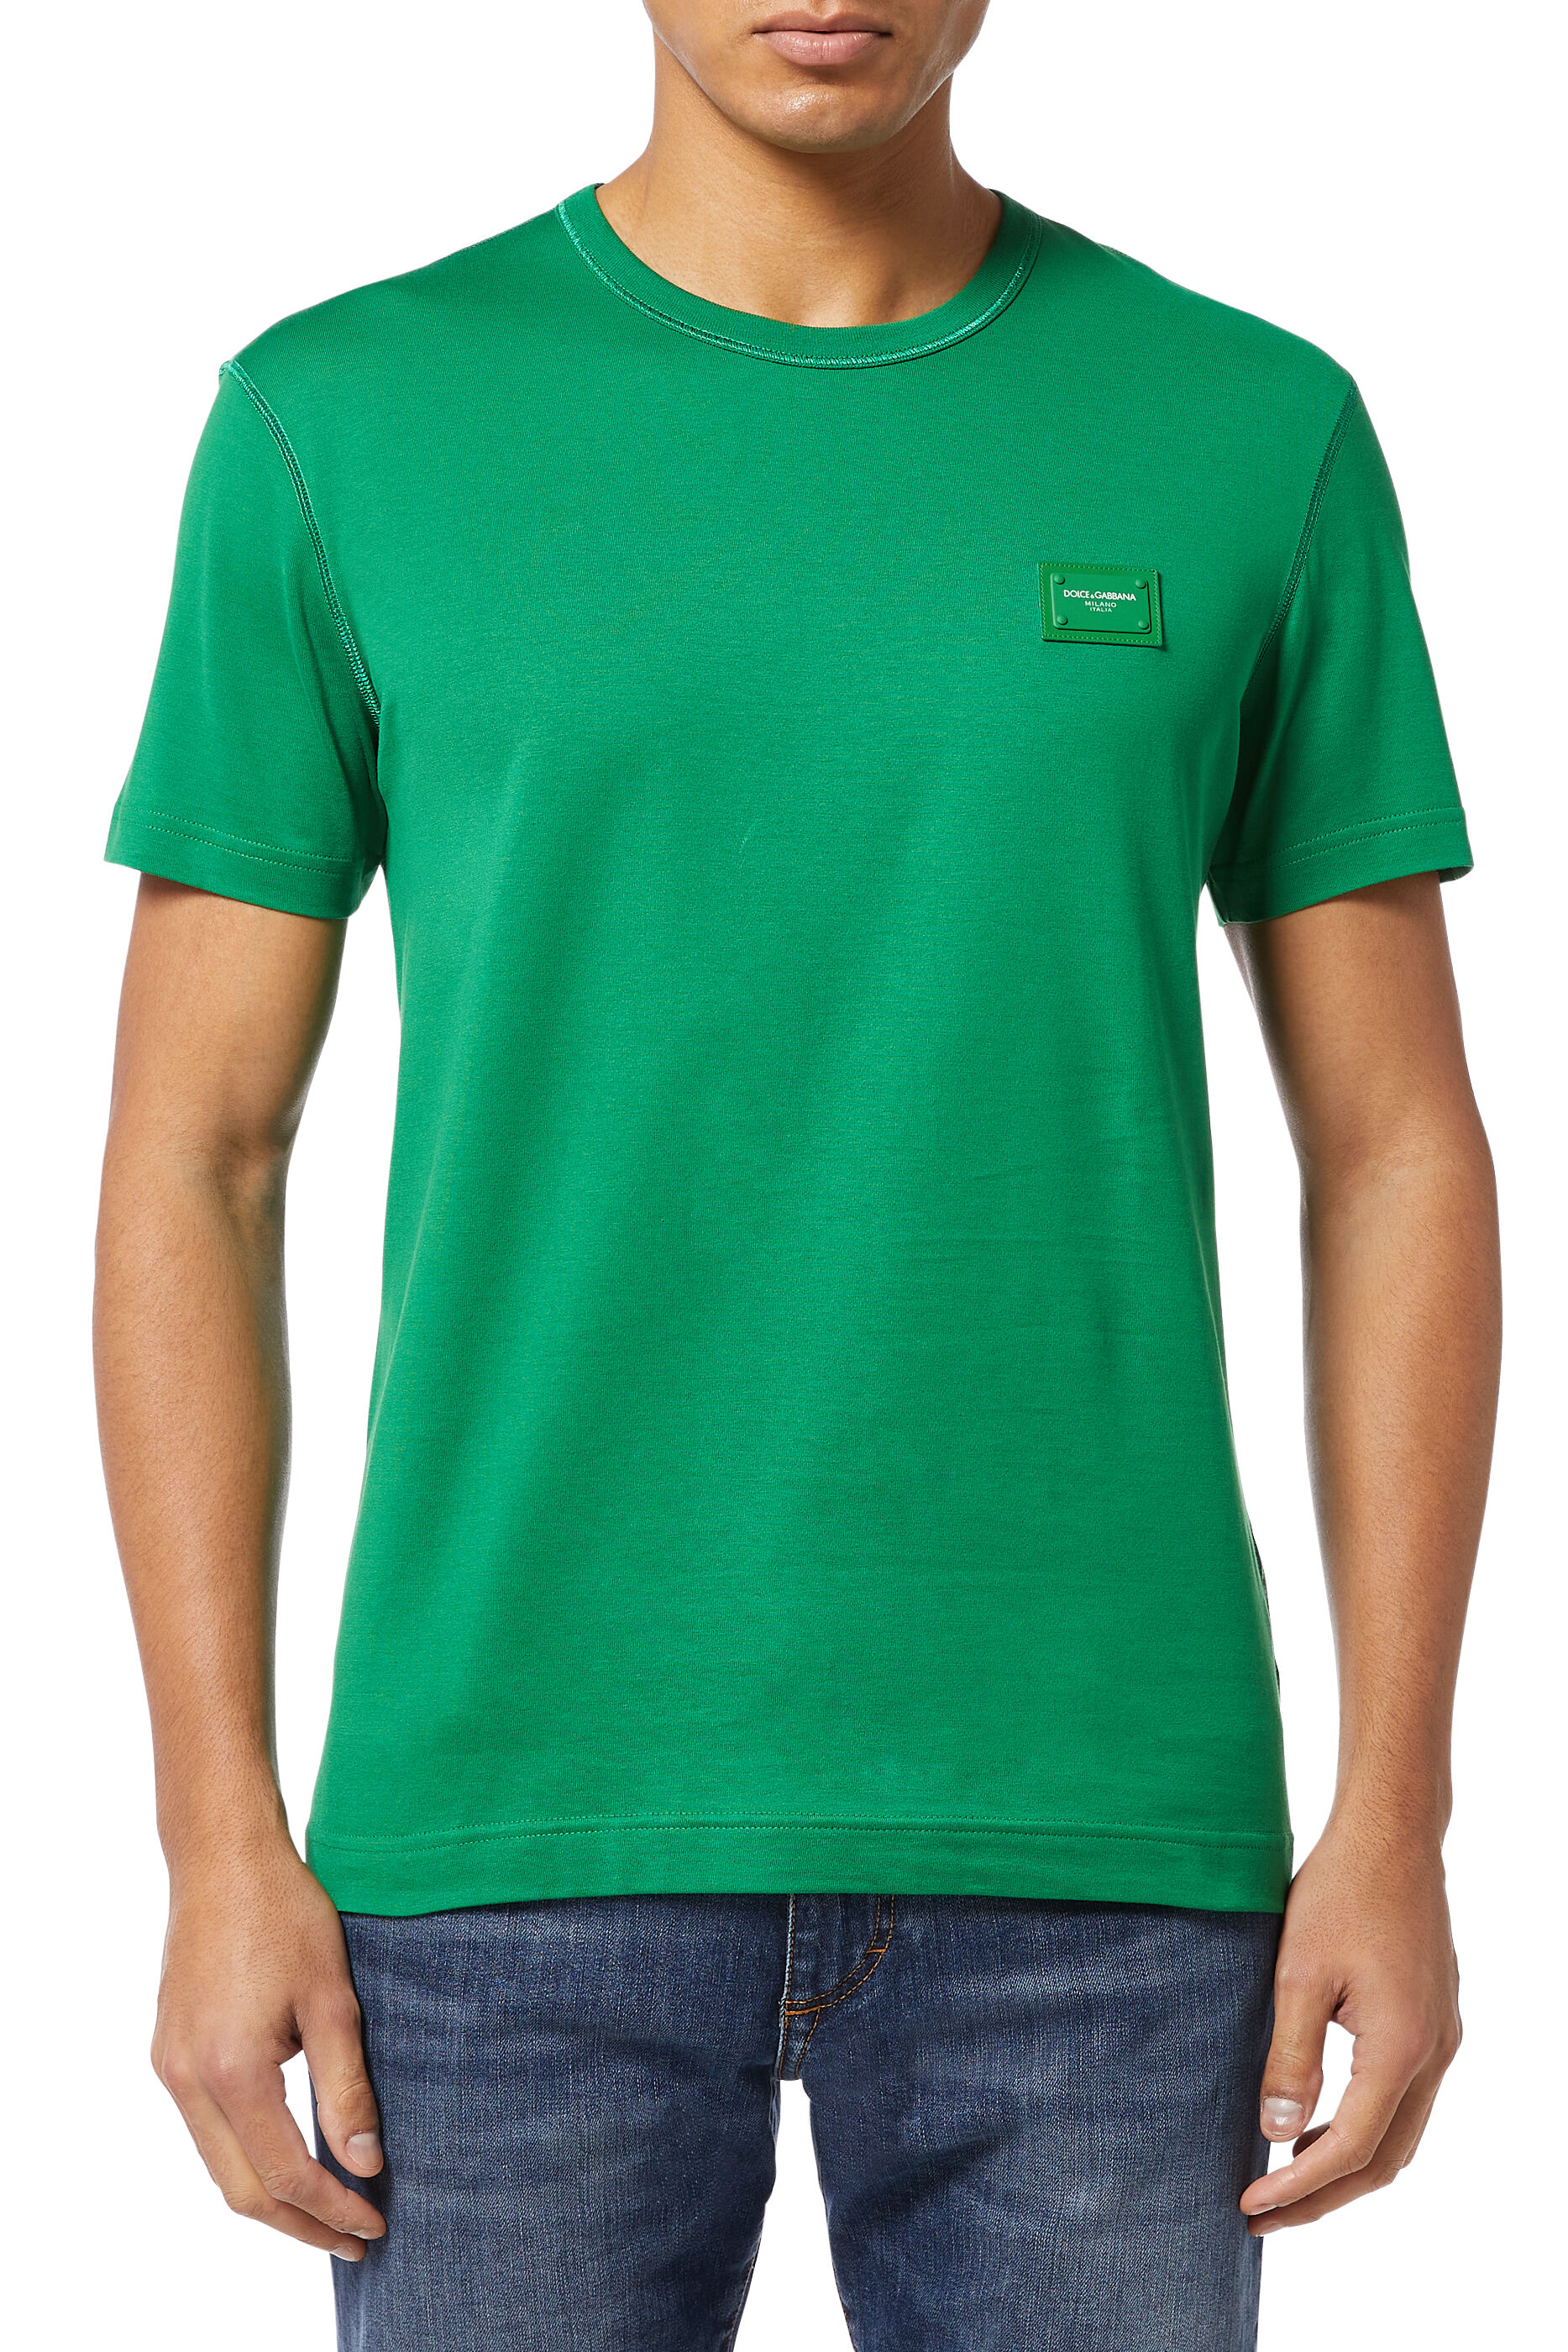 dolce and gabbana green t shirt